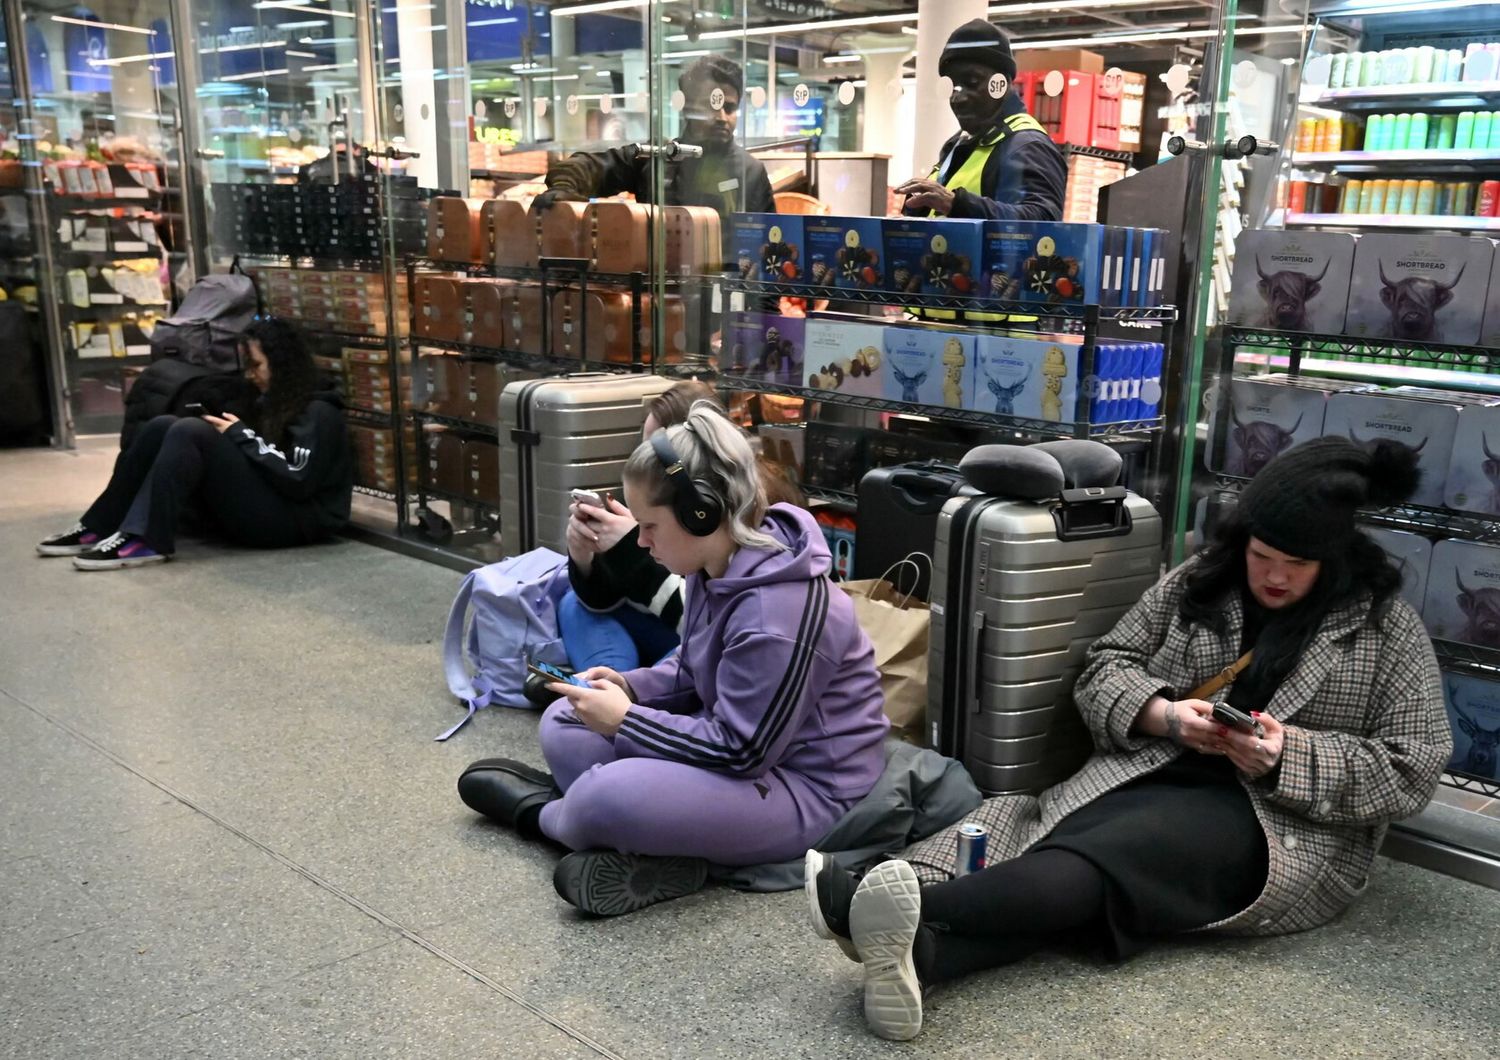 Viaggiatori in attesa alla stazione St. Pancras, Londra